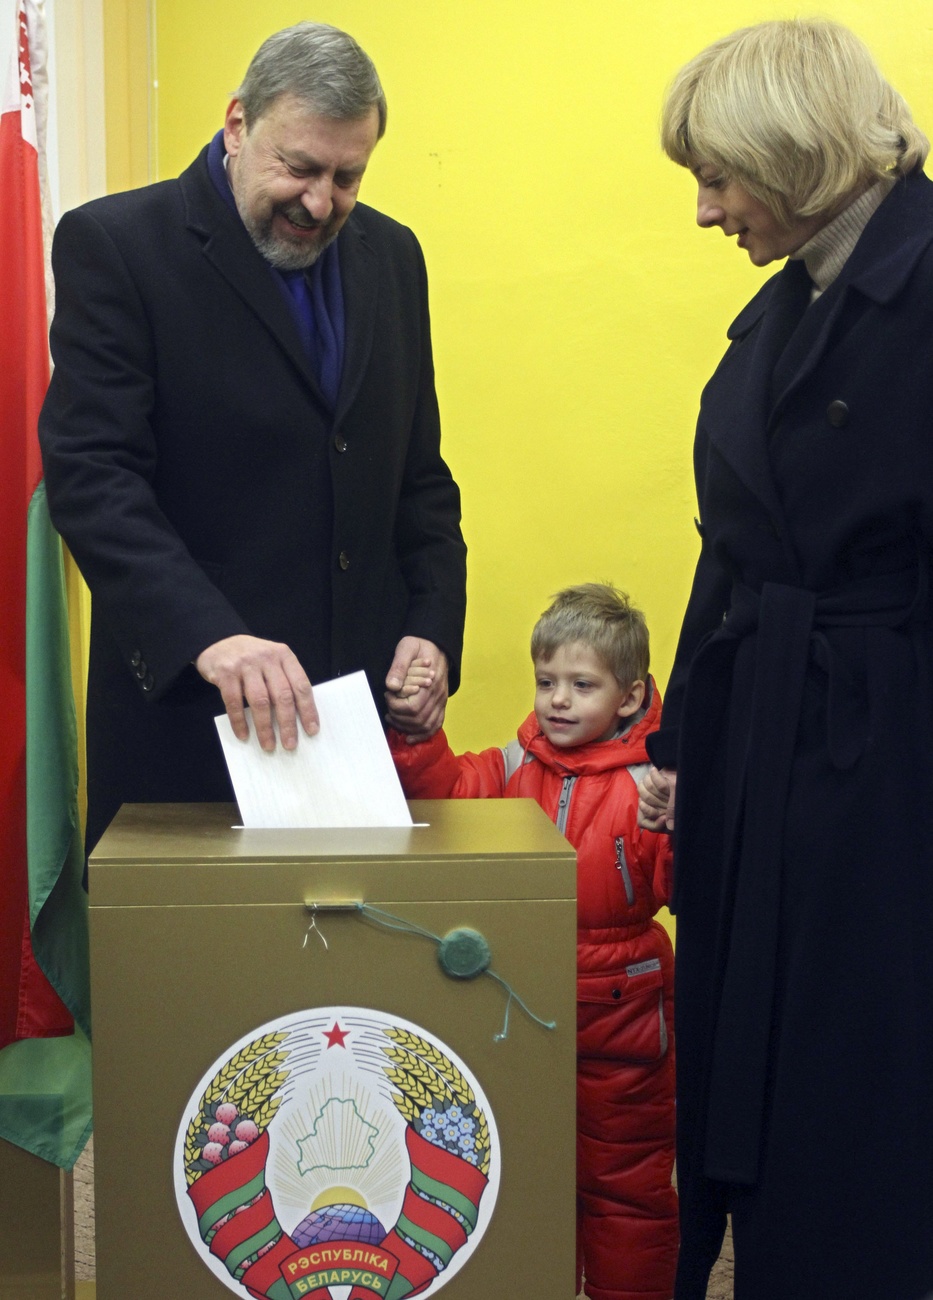 Sannikow mit Frau und Sohn beim Wählen